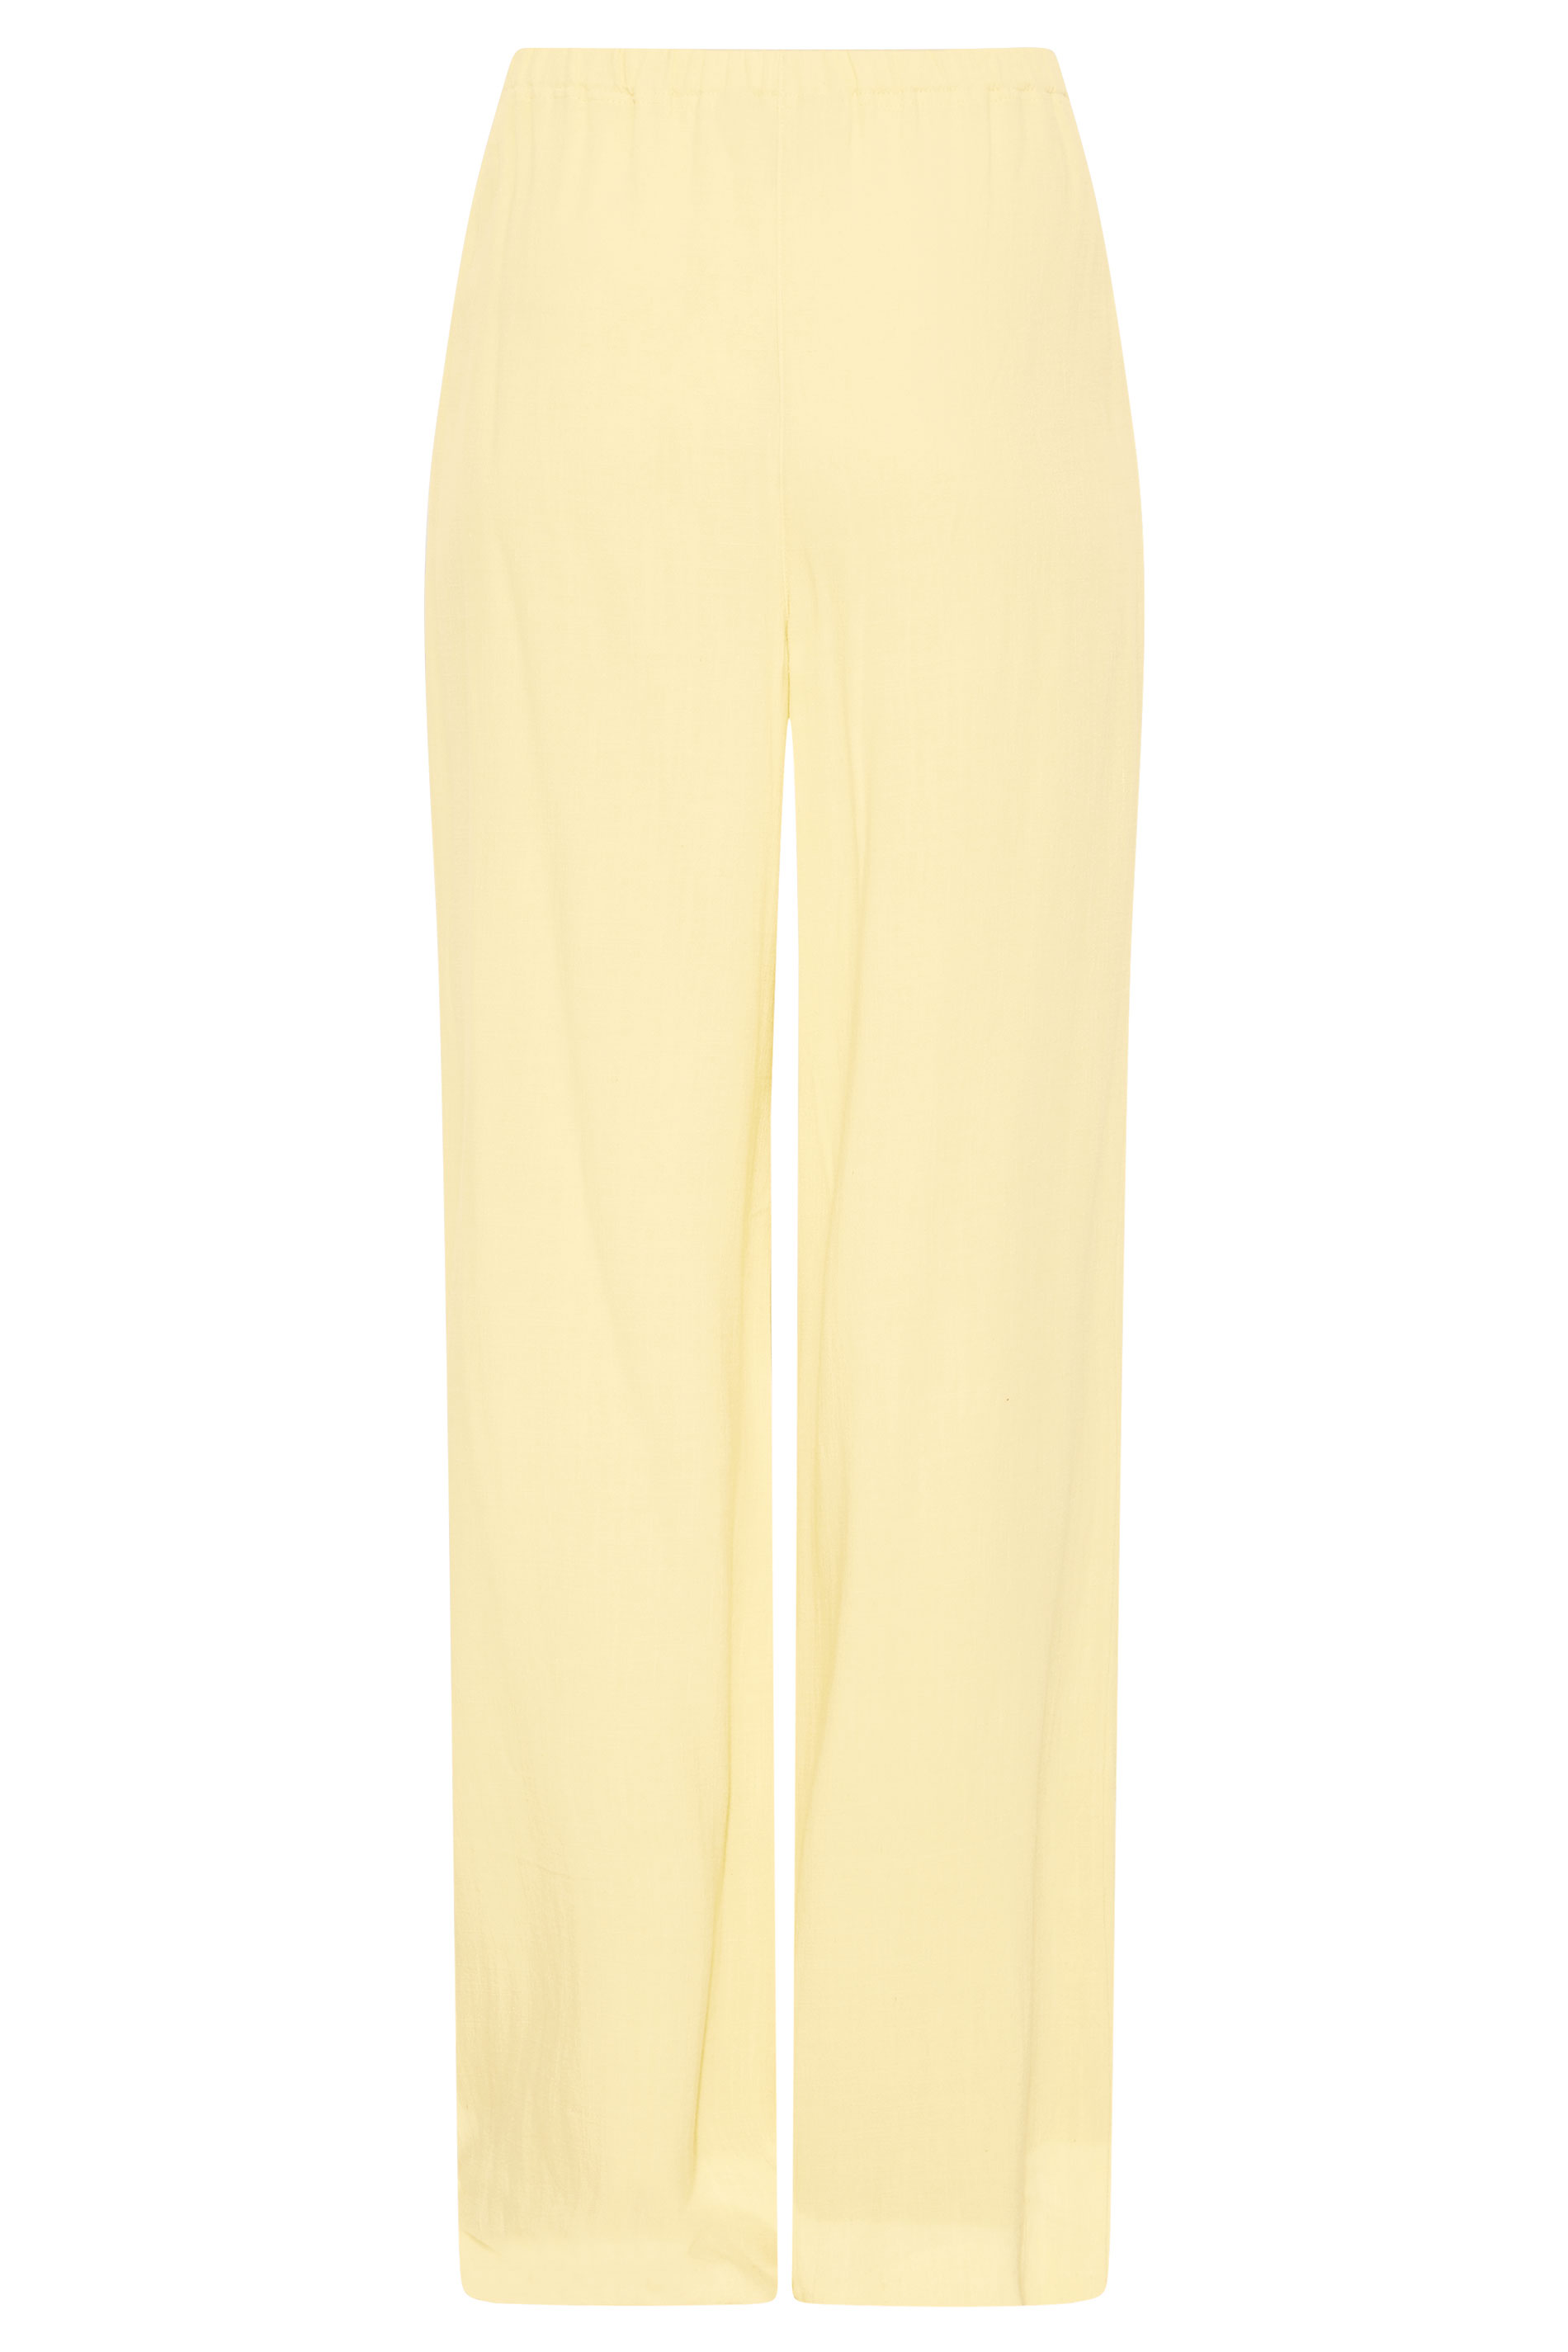 LTS Tall Women's Lemon Yellow Linen Blend Wide Leg Trousers | Long Tall  Sally